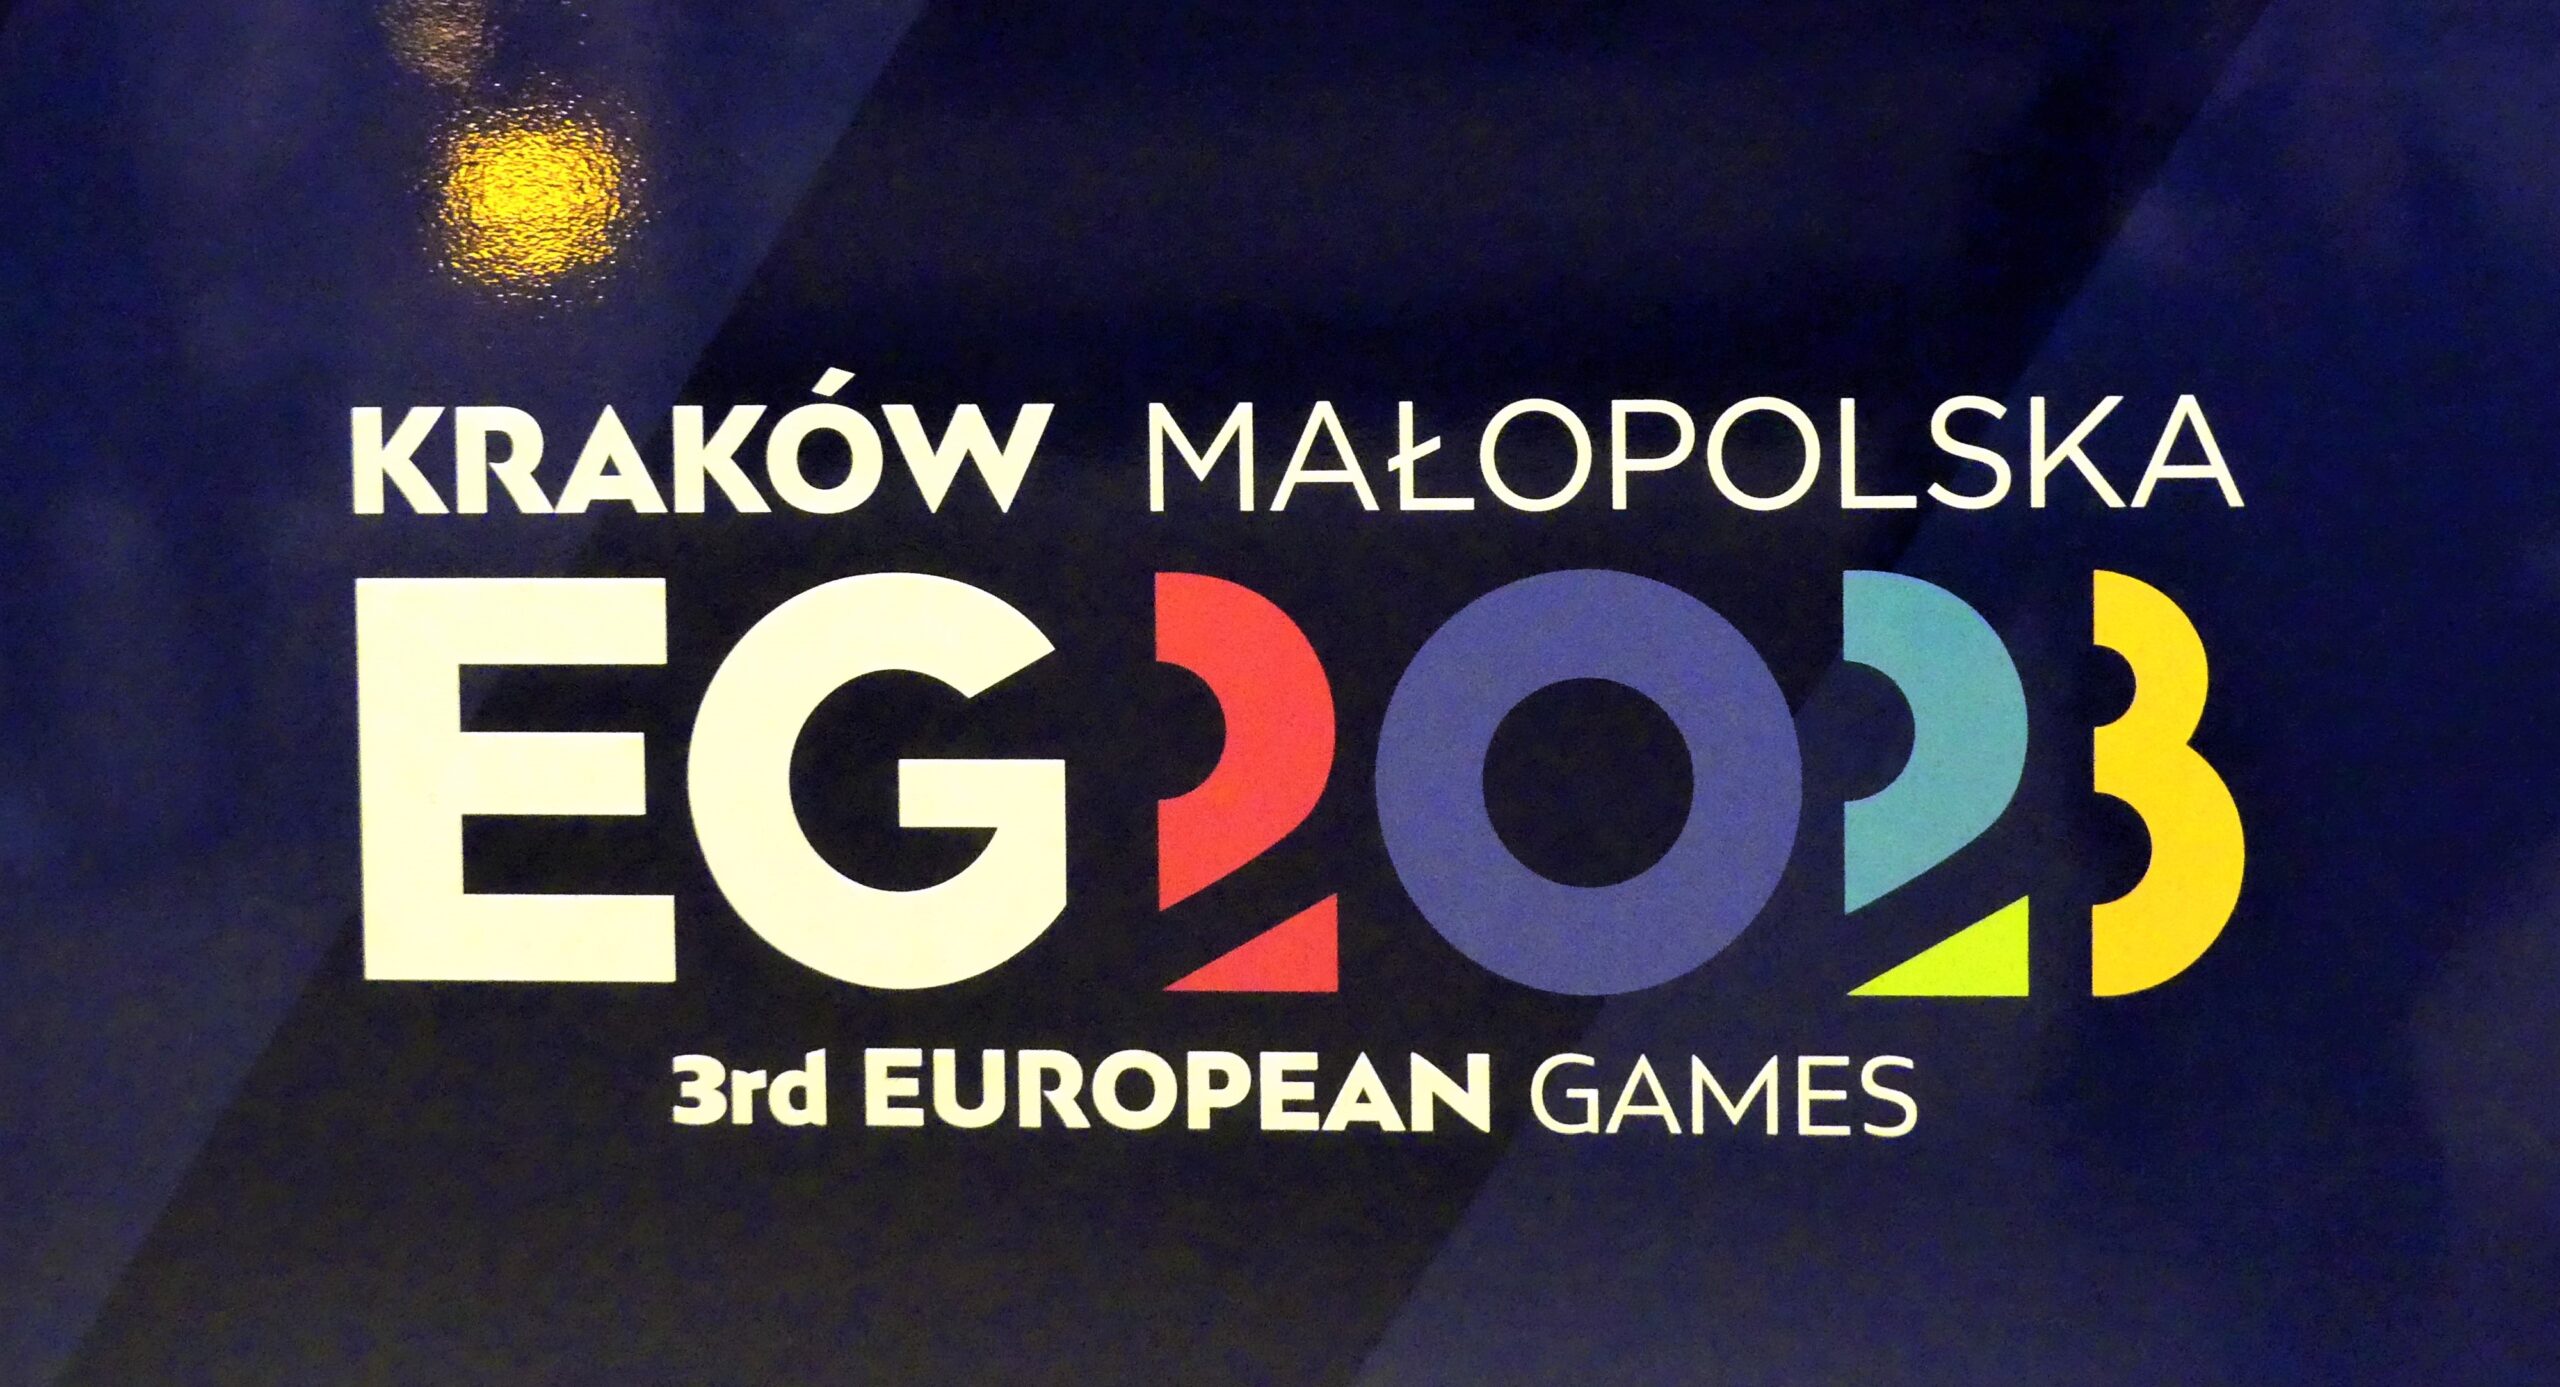 Rosjanie i Białorusini zostali wykluczeni z Igrzysk Europejskich w Polsce wbrew zaleceniom MKOl